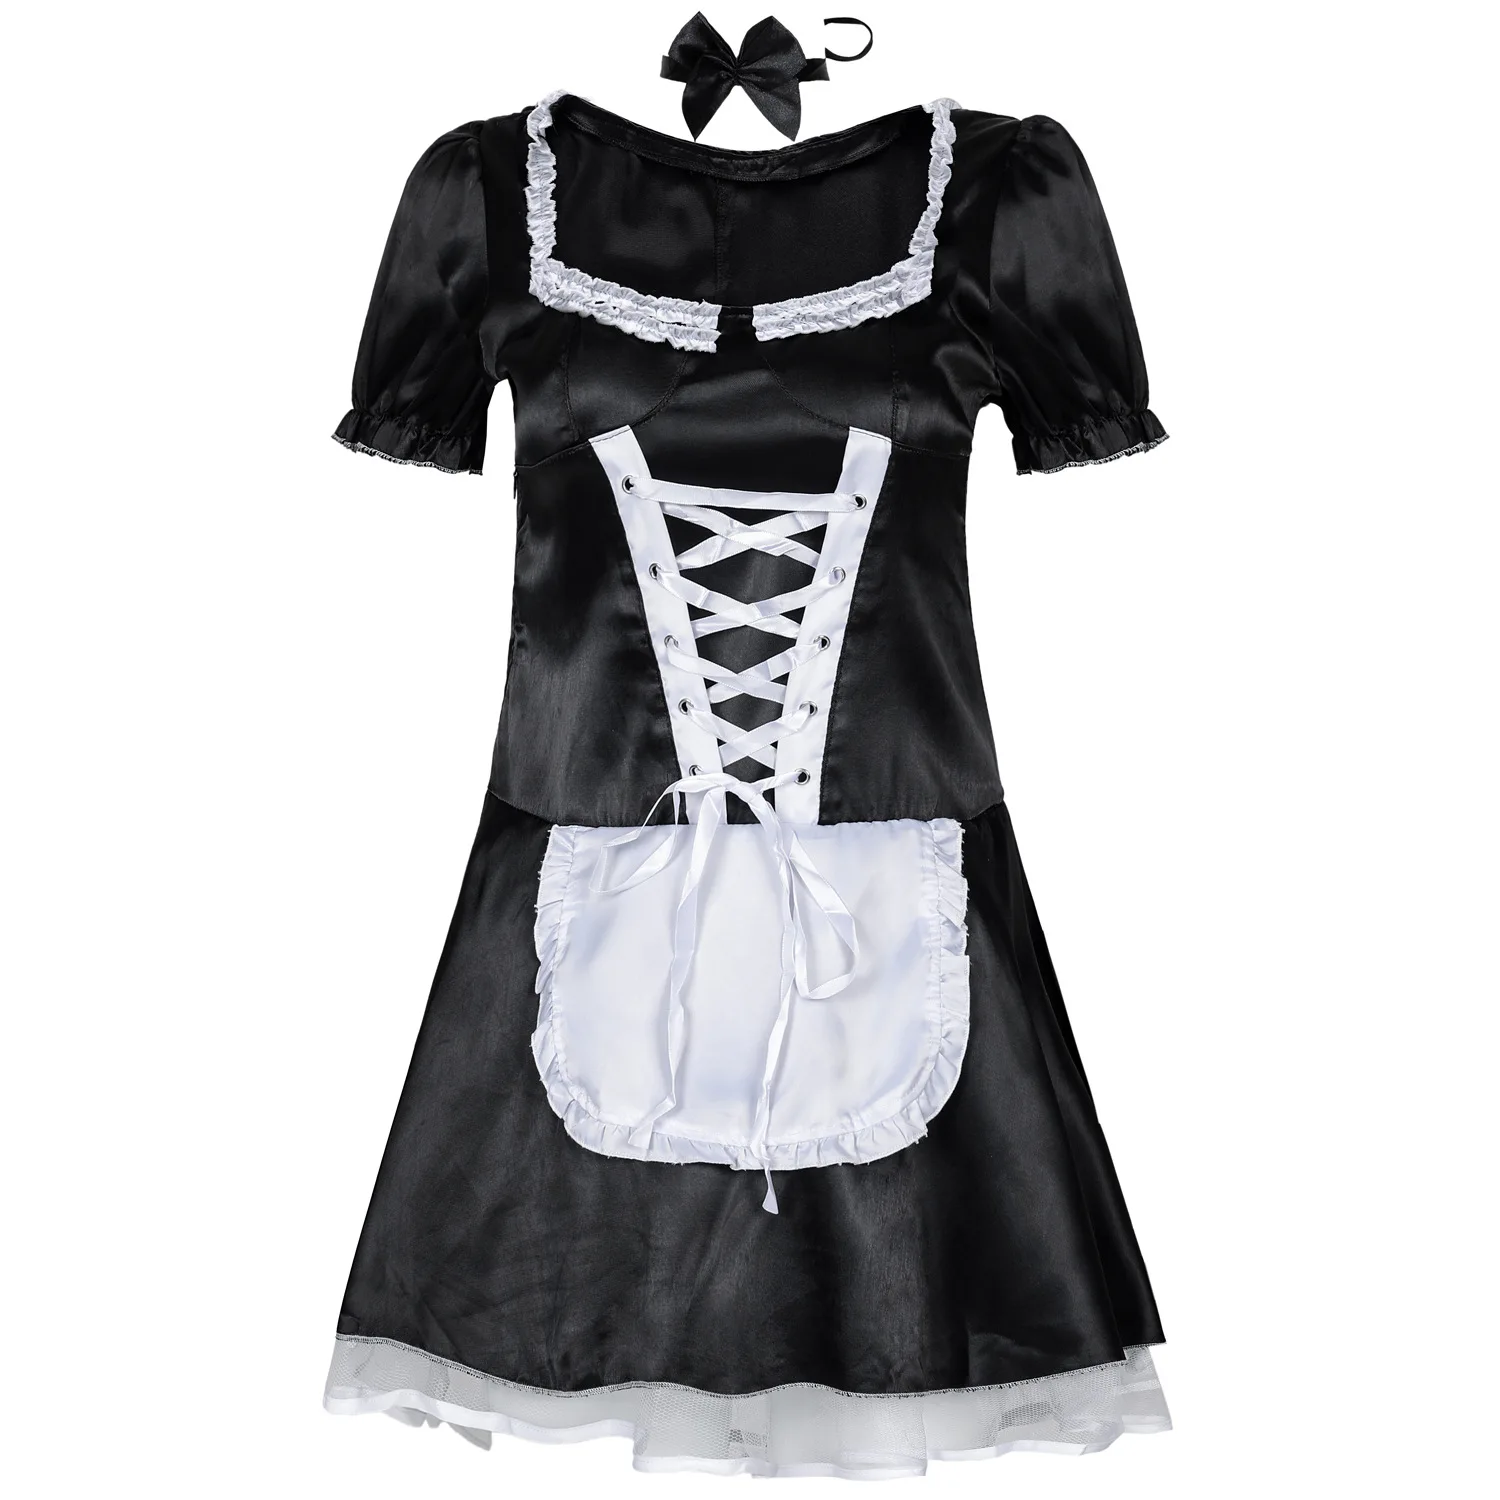 Для взрослых, женская пижама, горничная костюм высокое качество Косплэй Наряд Горничной Леди сценический костюм горничной сексуальное платье для ролевых игр - Цвет: Black